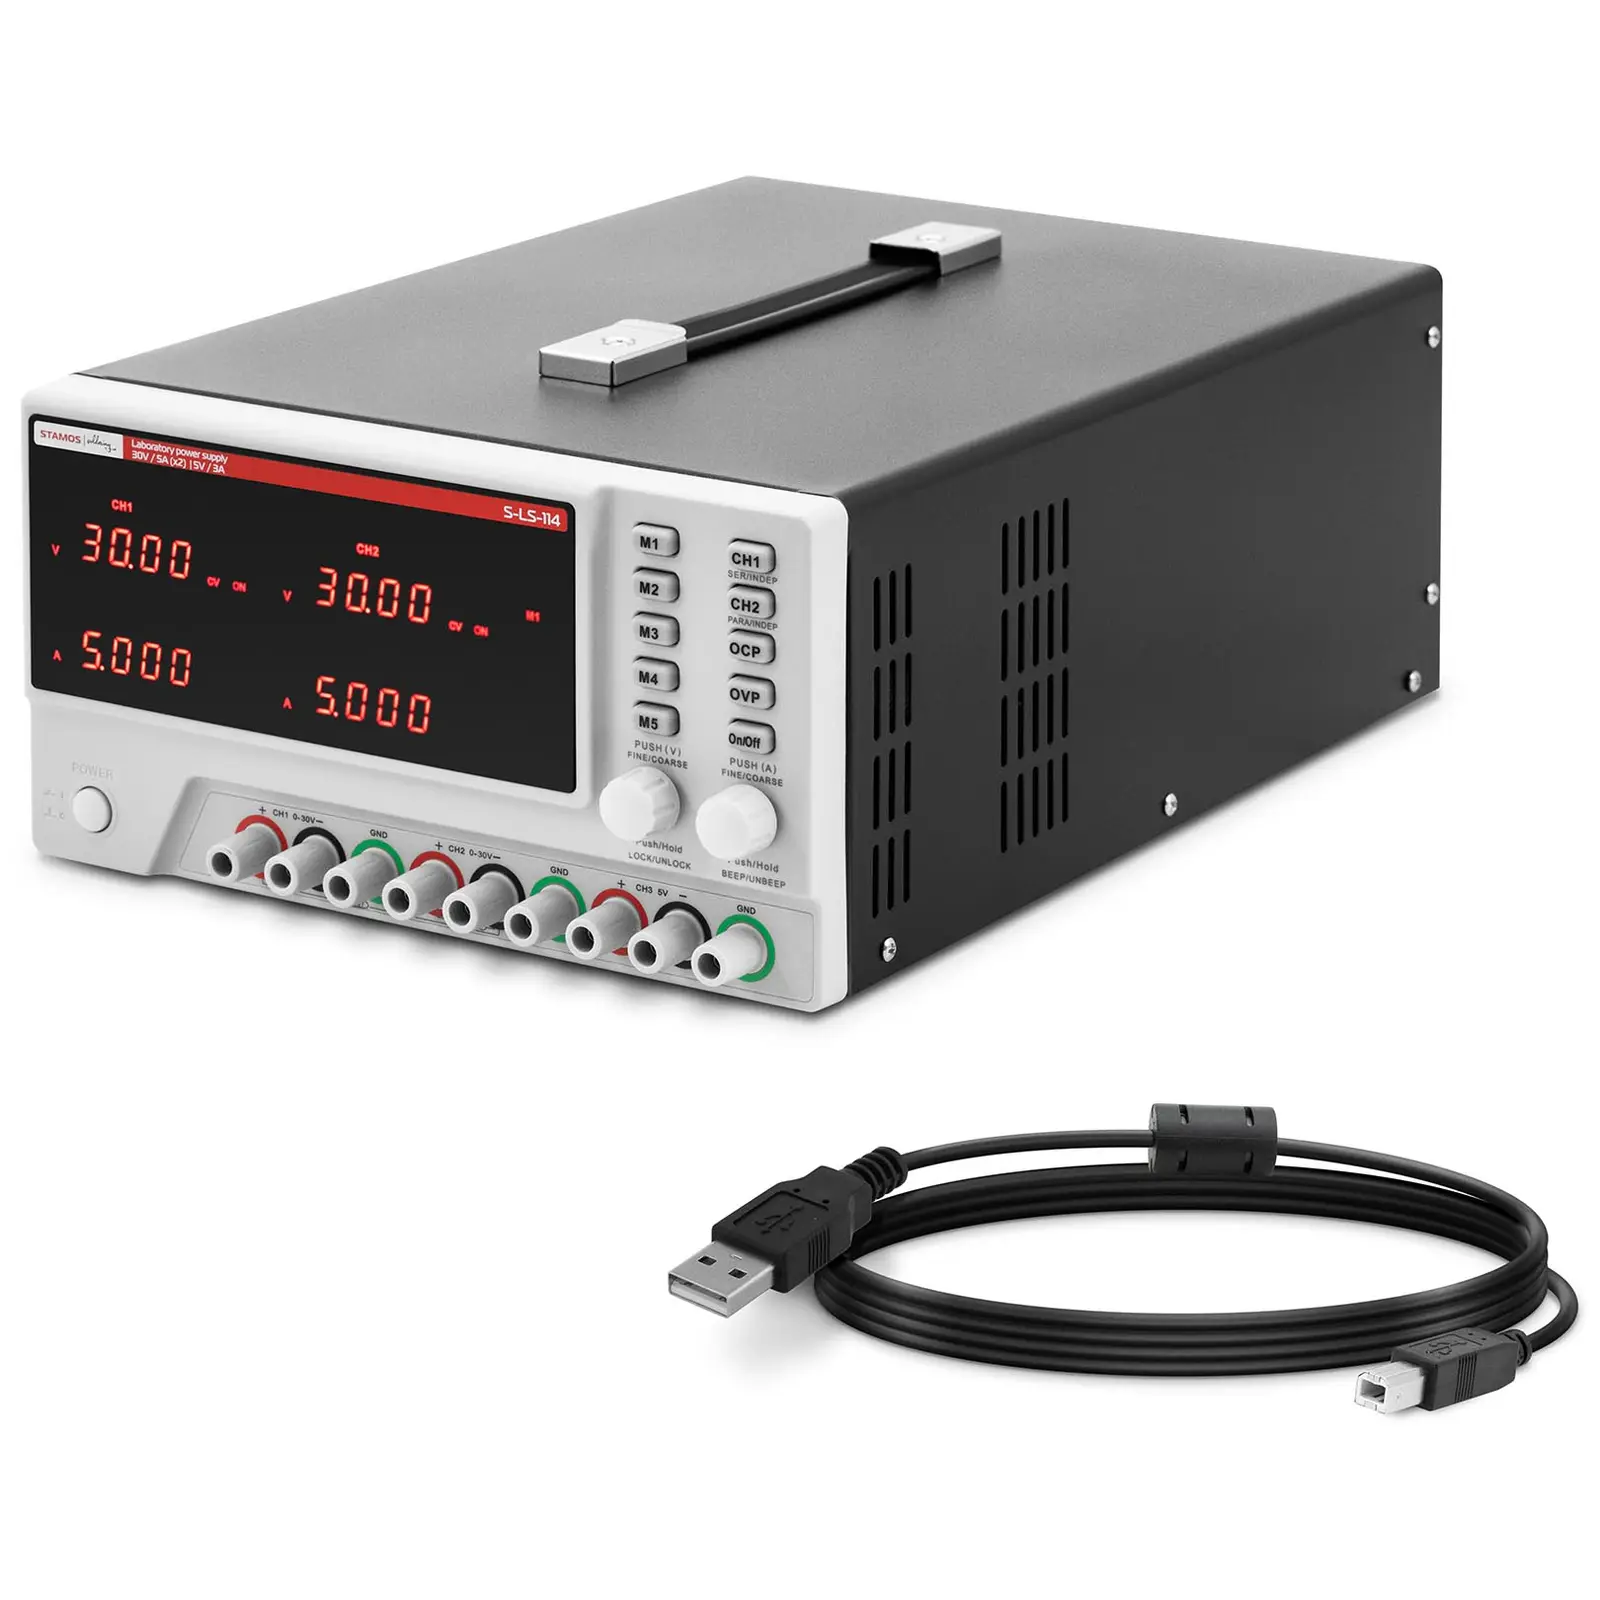 Zasilacz laboratoryjny - 0-30 V - 0-5 DC - 550 W - 5 miejsc pamięci - wyświetlacz LED - USB/RS232